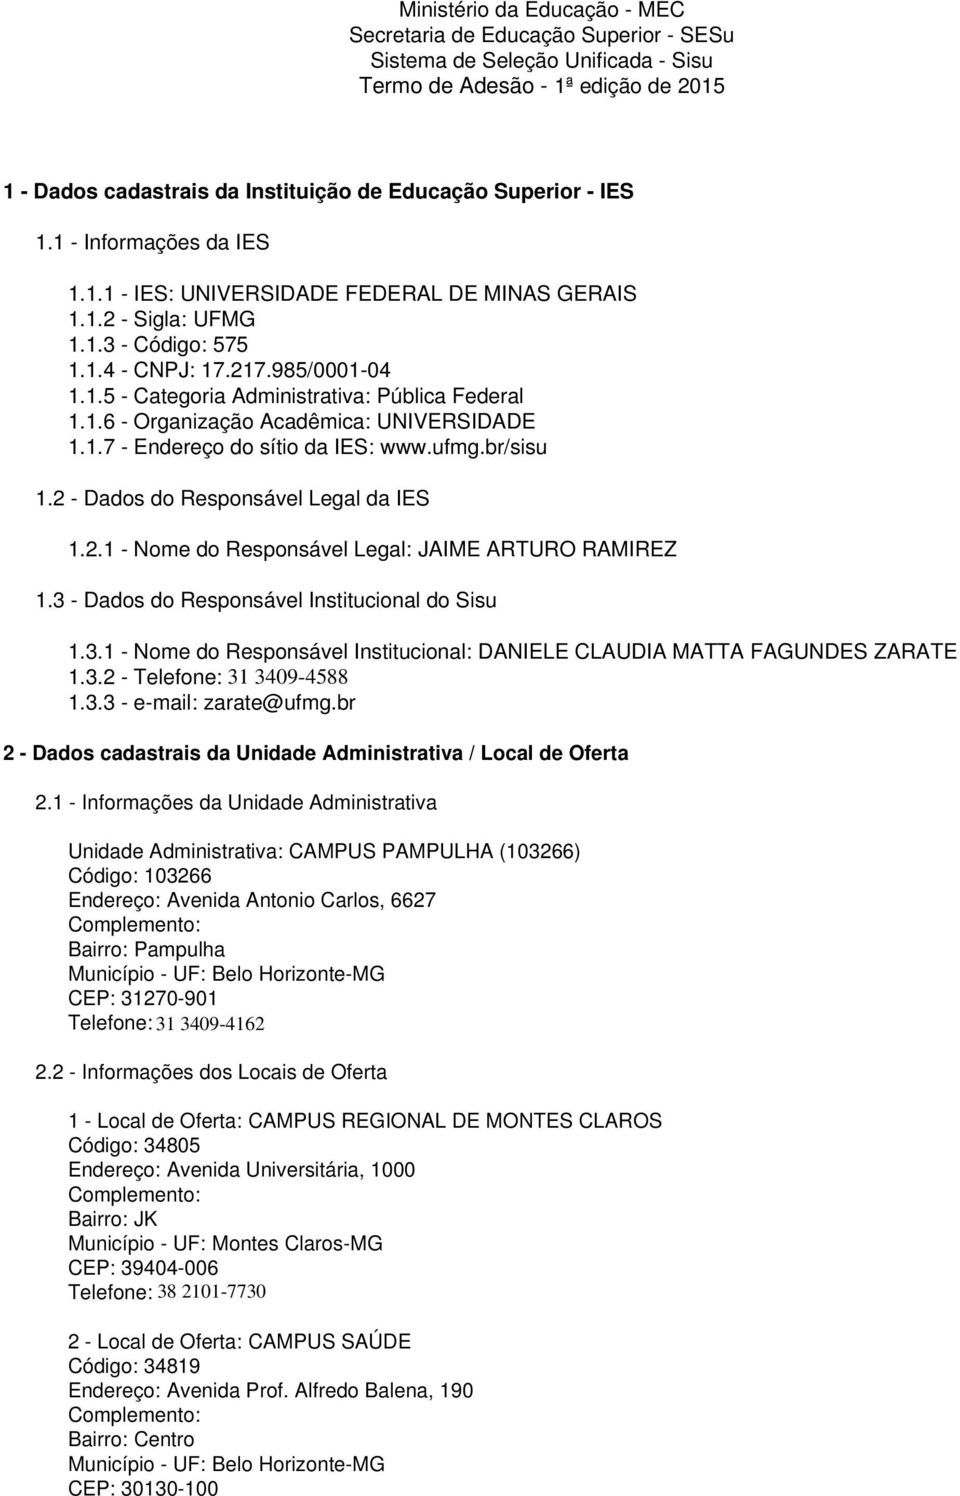 1.6 - Organização Acadêmica: UNIVERSIDADE 1.1.7 - Endereço do sítio da IES: www.ufmg.br/sisu 1.2 - Dados do Responsável Legal da IES 1.2.1 - Nome do Responsável Legal: JAIME ARTURO RAMIREZ 1.